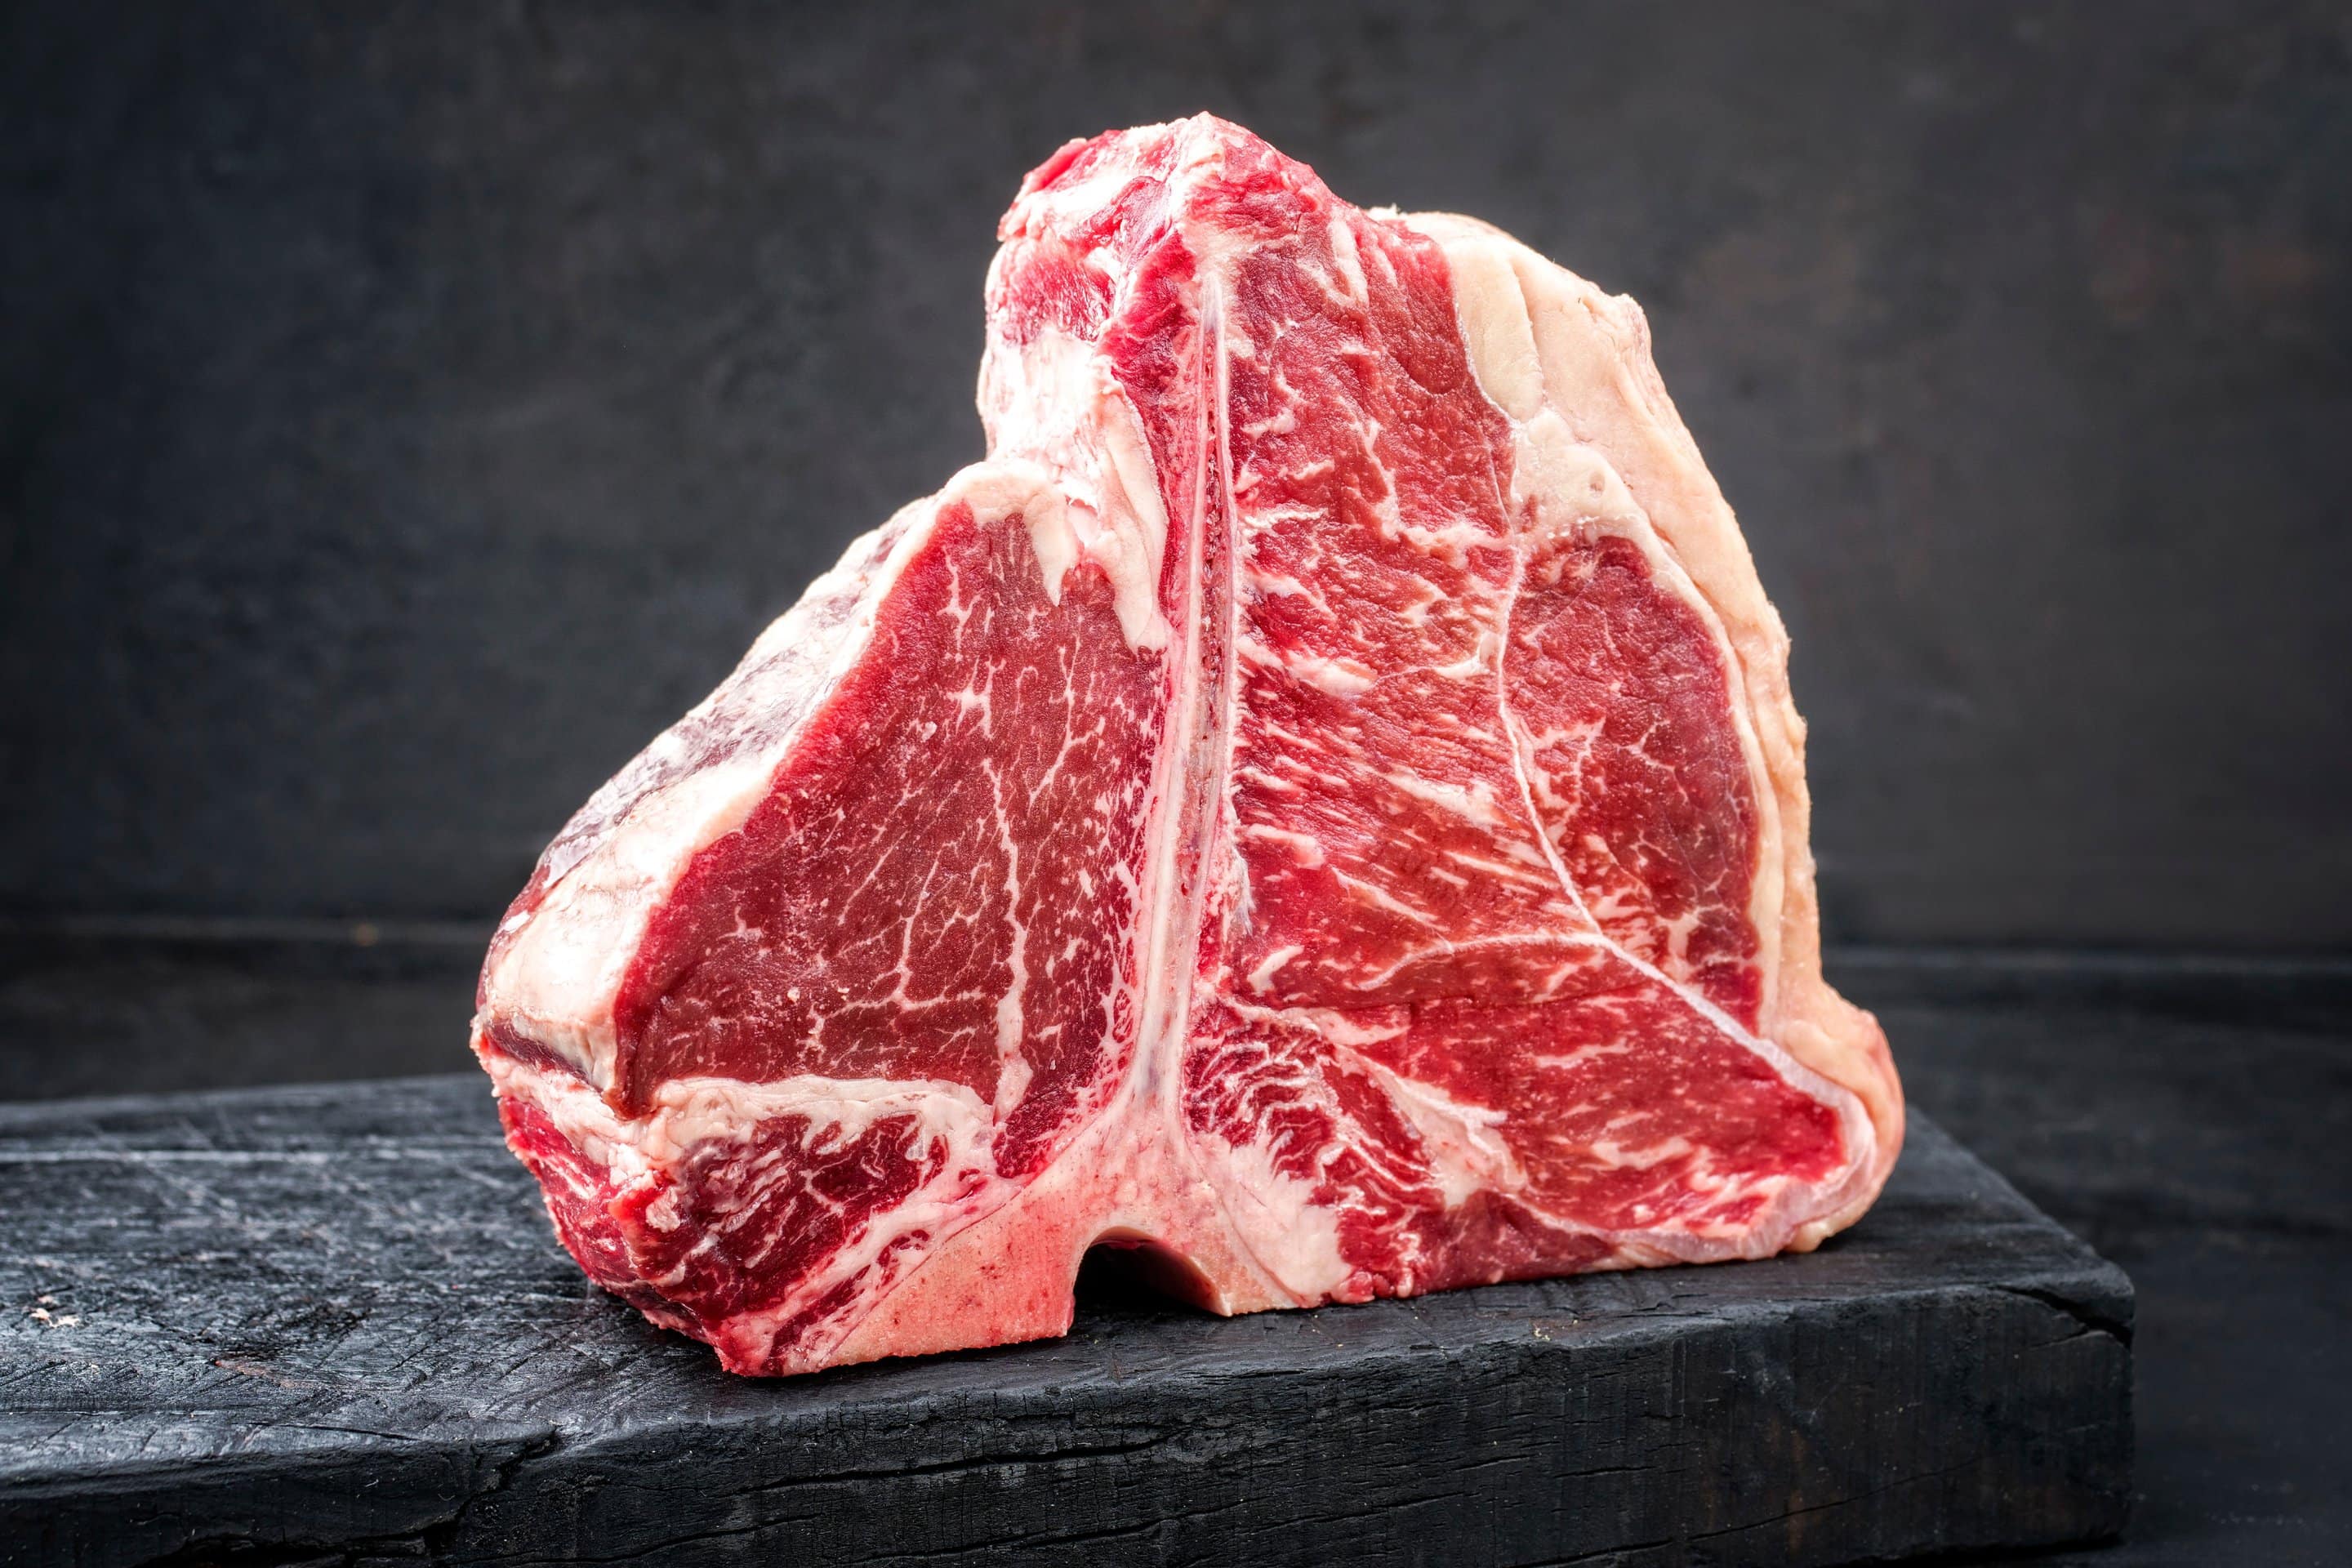 Aufrecht stehendes Porterhous-Steak auf schwarzer Schieferplatte. Frontalansicht.